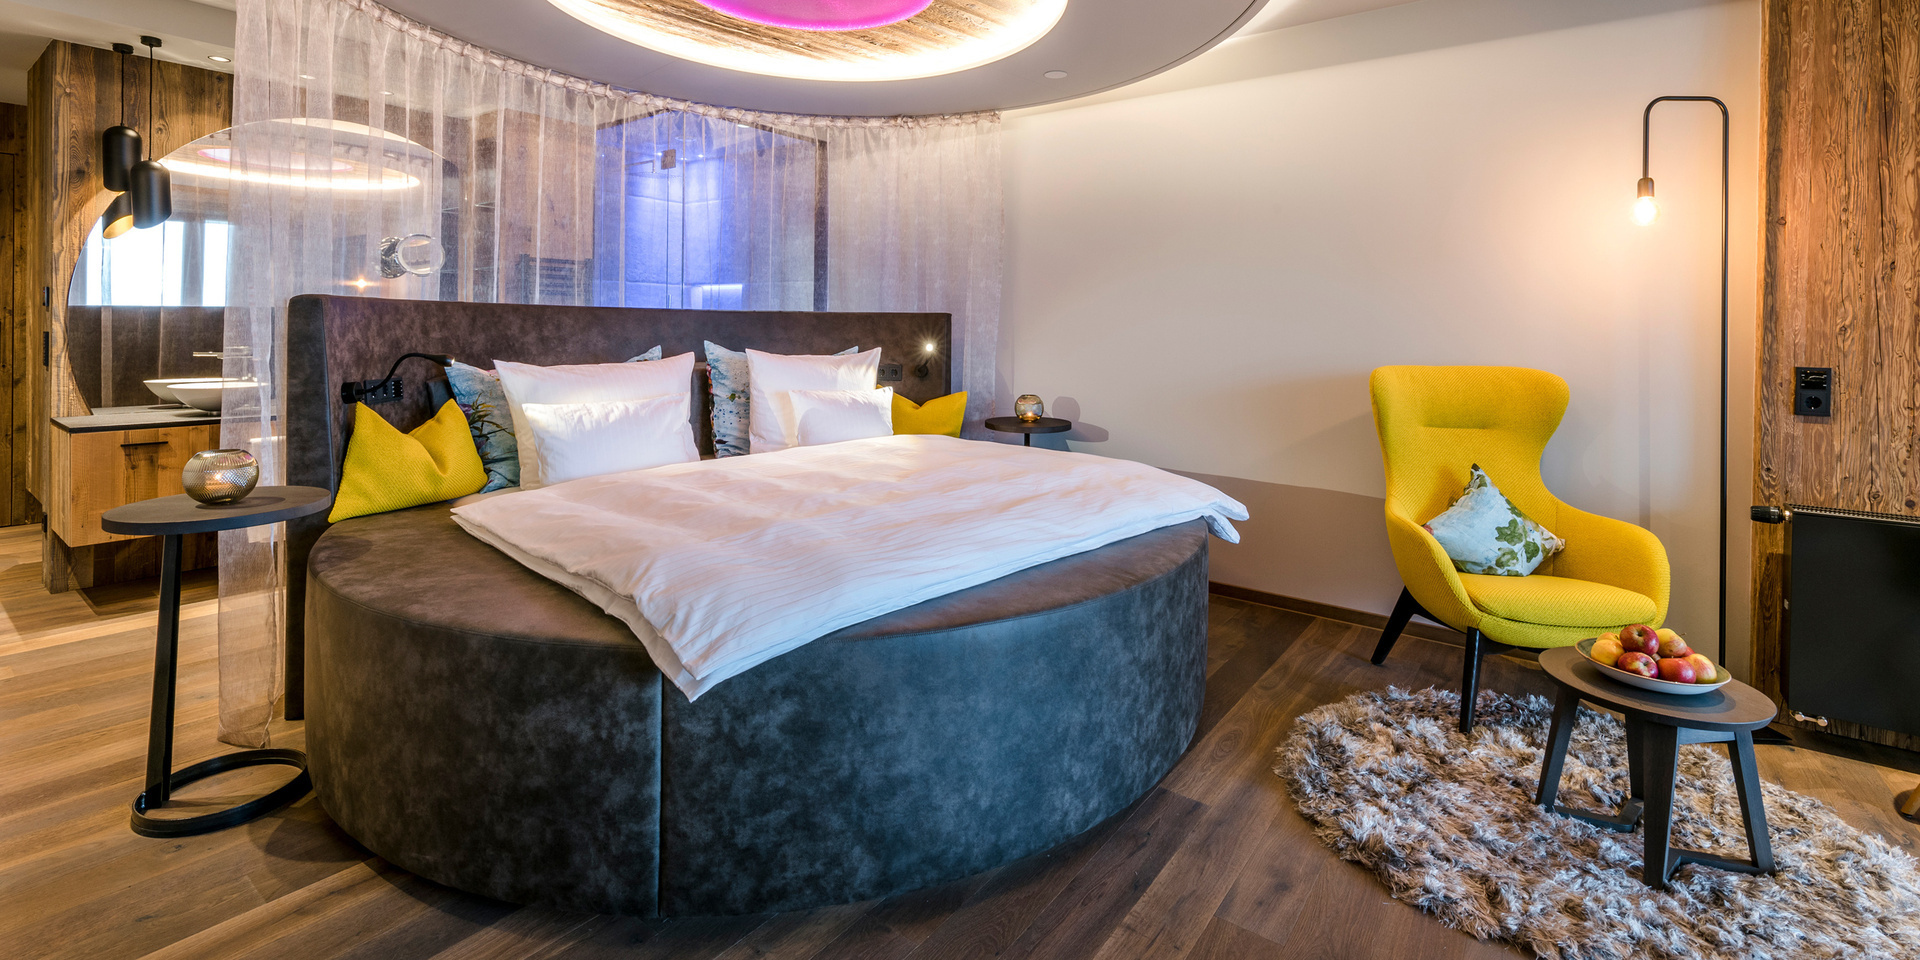 Romantikwochenende Bayern - romantisches Hotelzimmer mit eigenem Whirlpool und rundem Kuschelbett